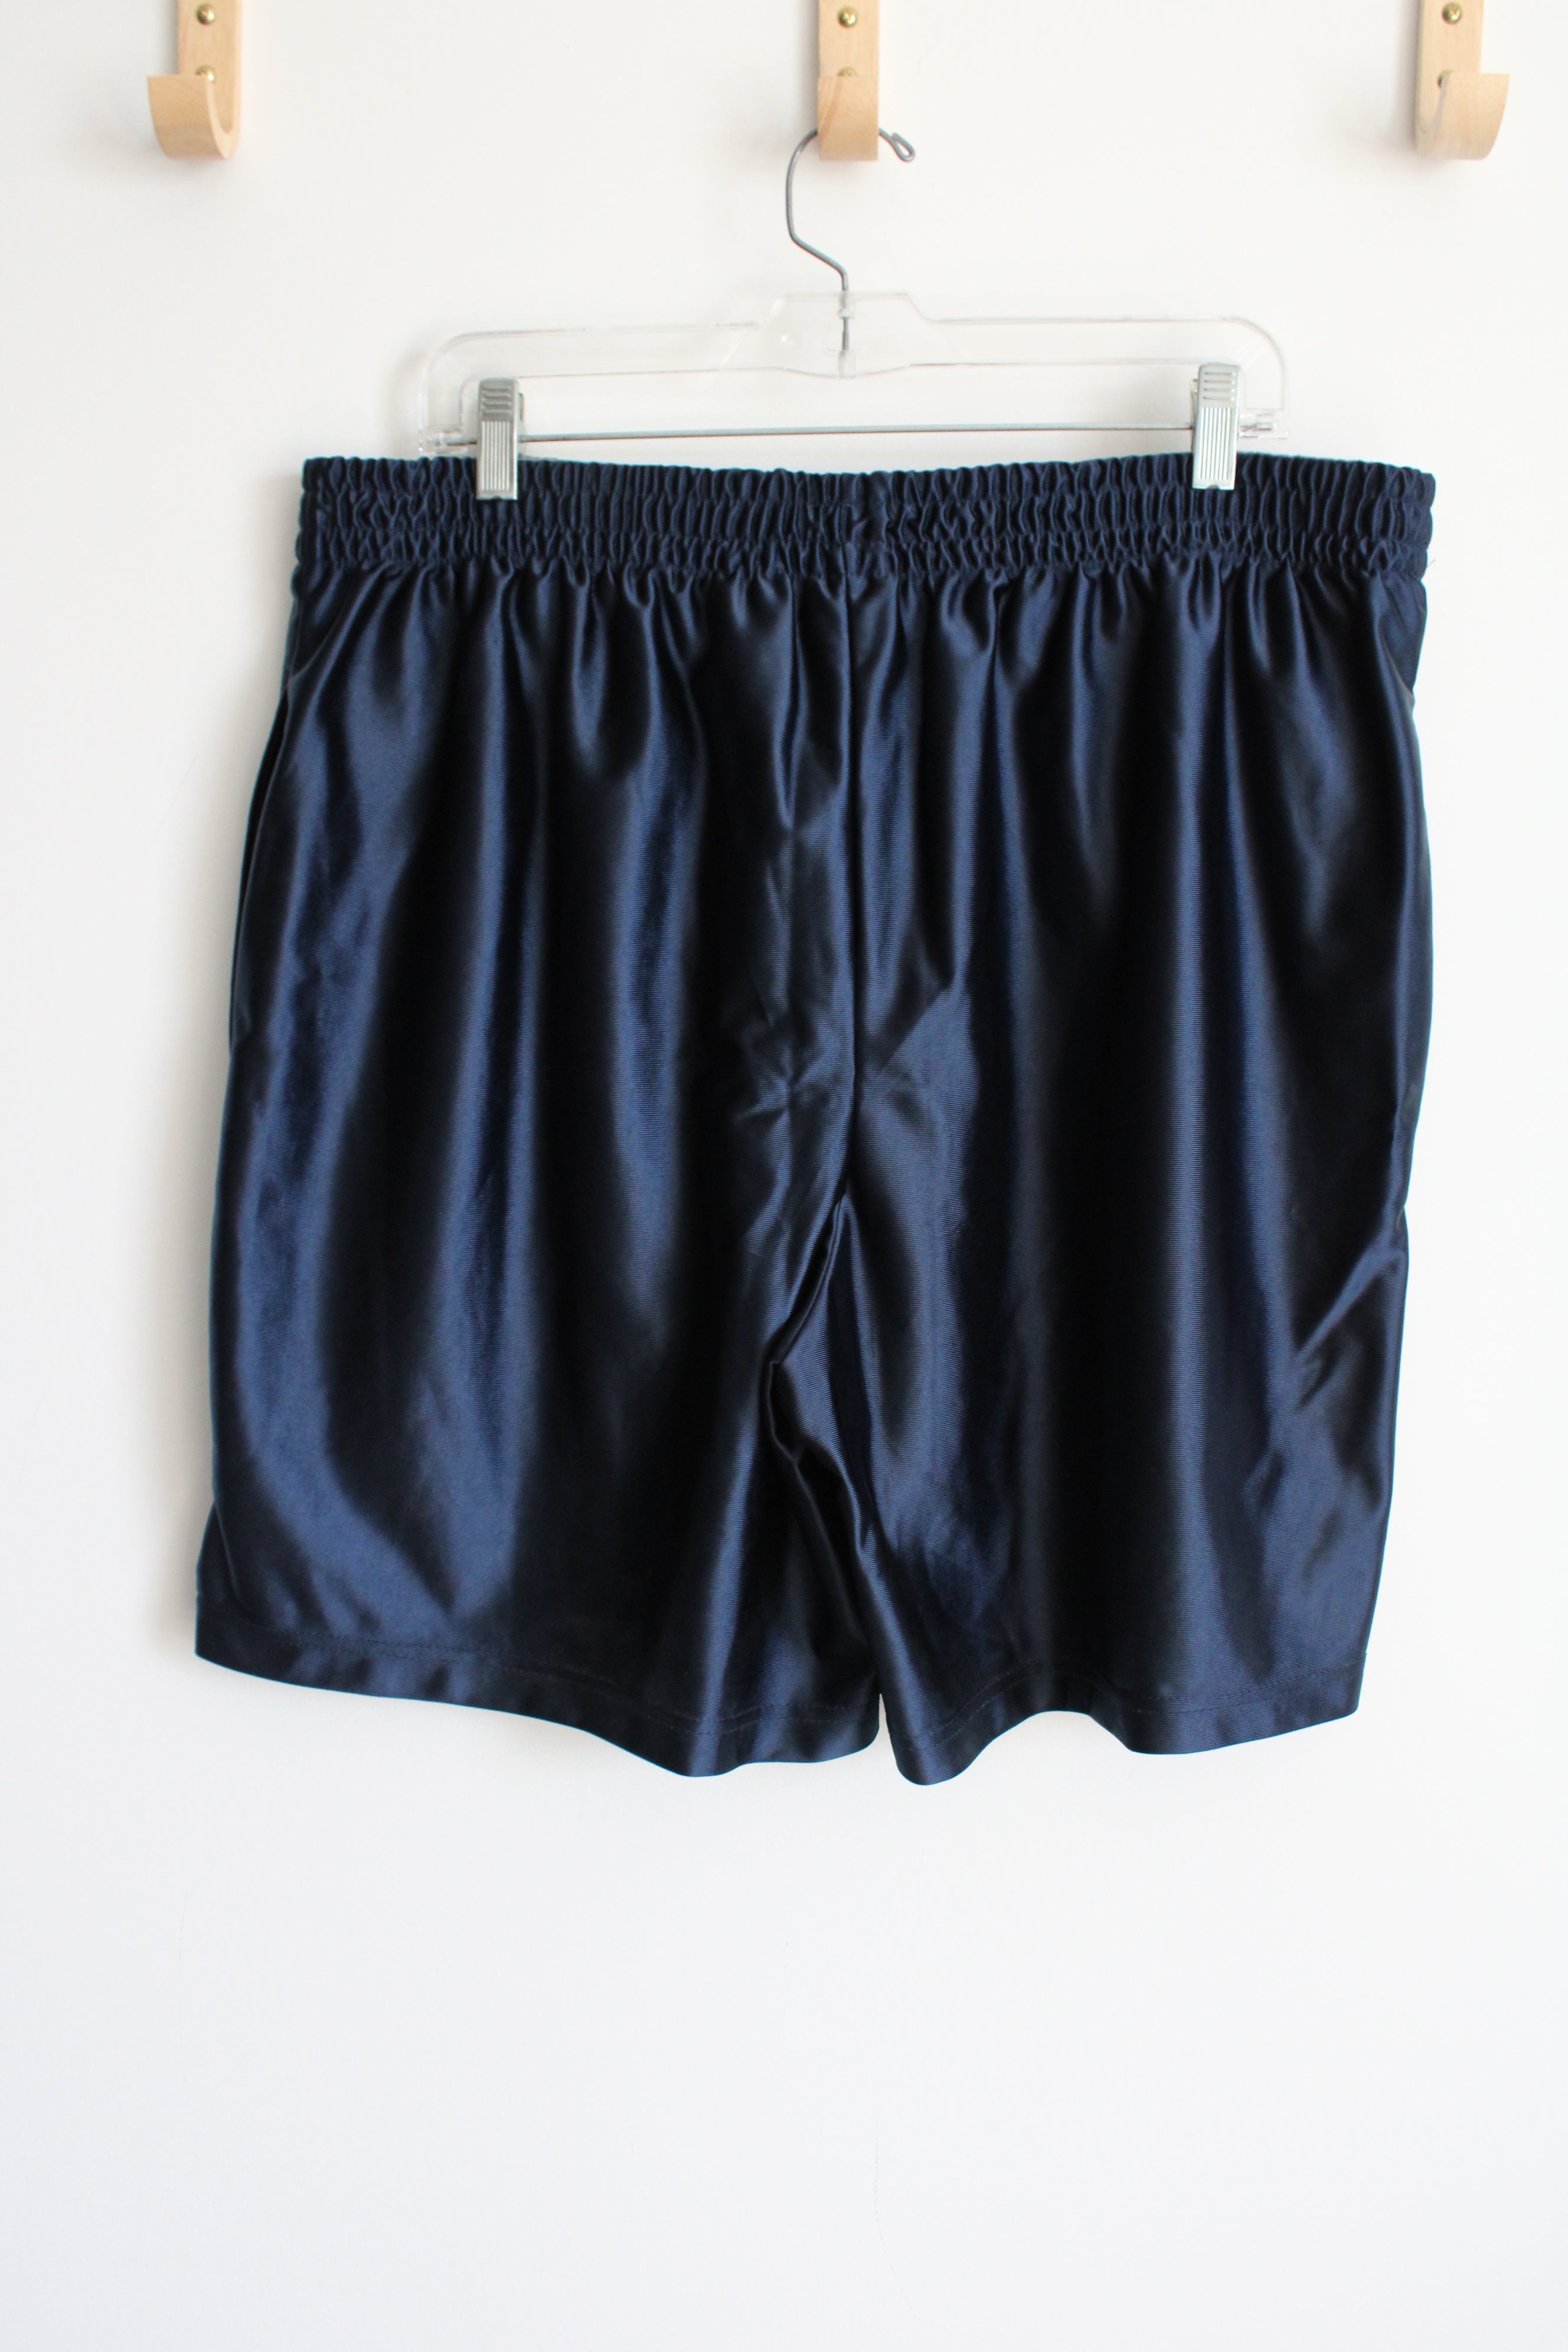 Athletic Works Dark Blue Athletic Shorts | XL